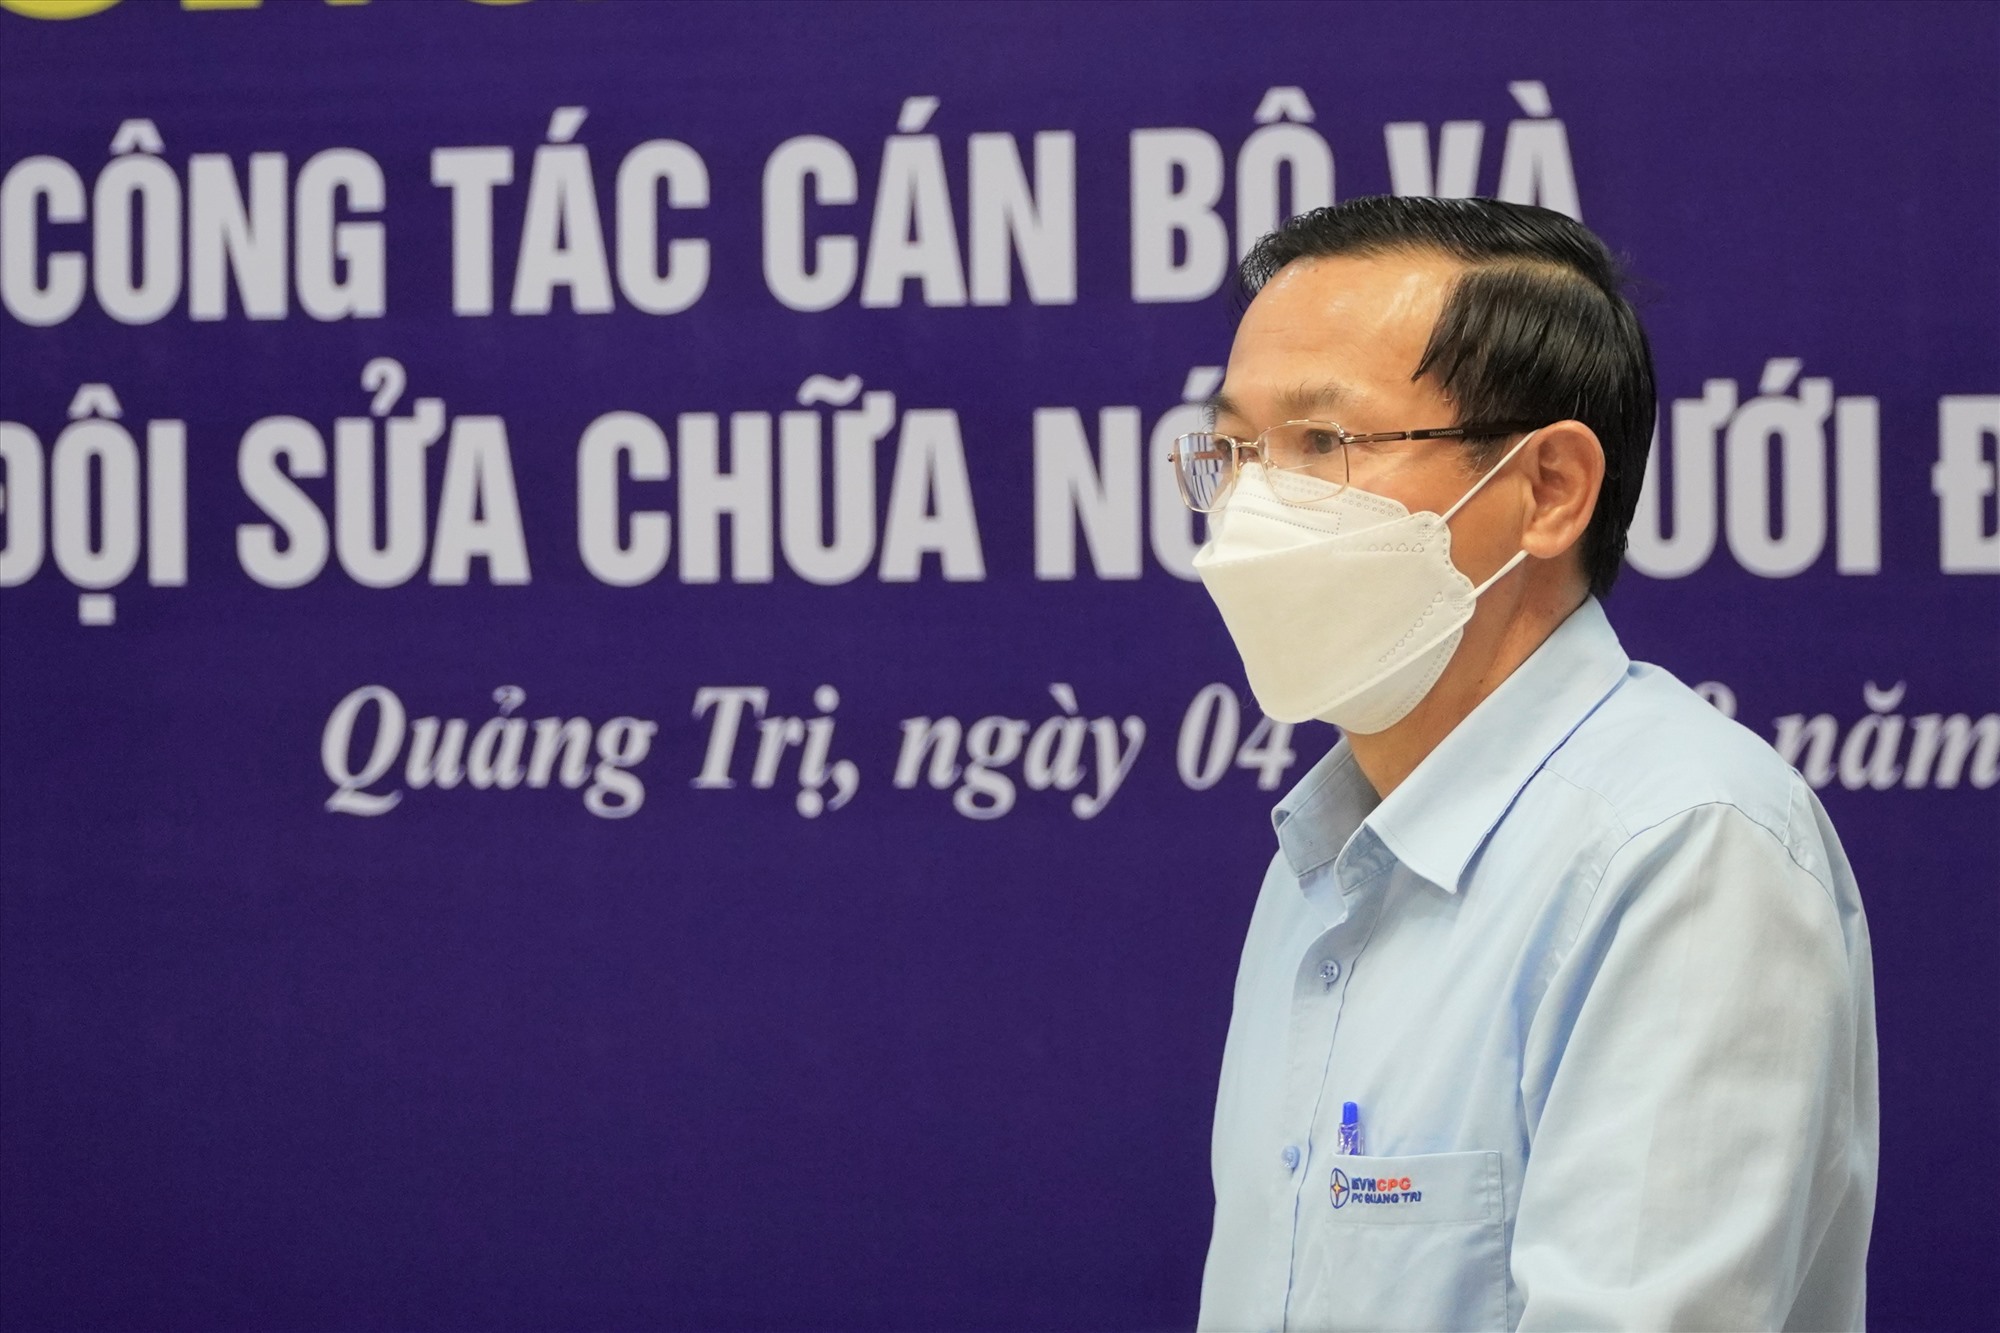 Giám đốc Công ty Điện lực Quảng Trị Phan Văn Vĩnh yêu cầu các thành viên trong đội phải nghiêm chỉnh chấp hành quy trình an toàn điện và các quy trình, quy định liên quan nhằm đảm bảo an toàn khi công tác sửa chữa trên lưới điện không cắt điện